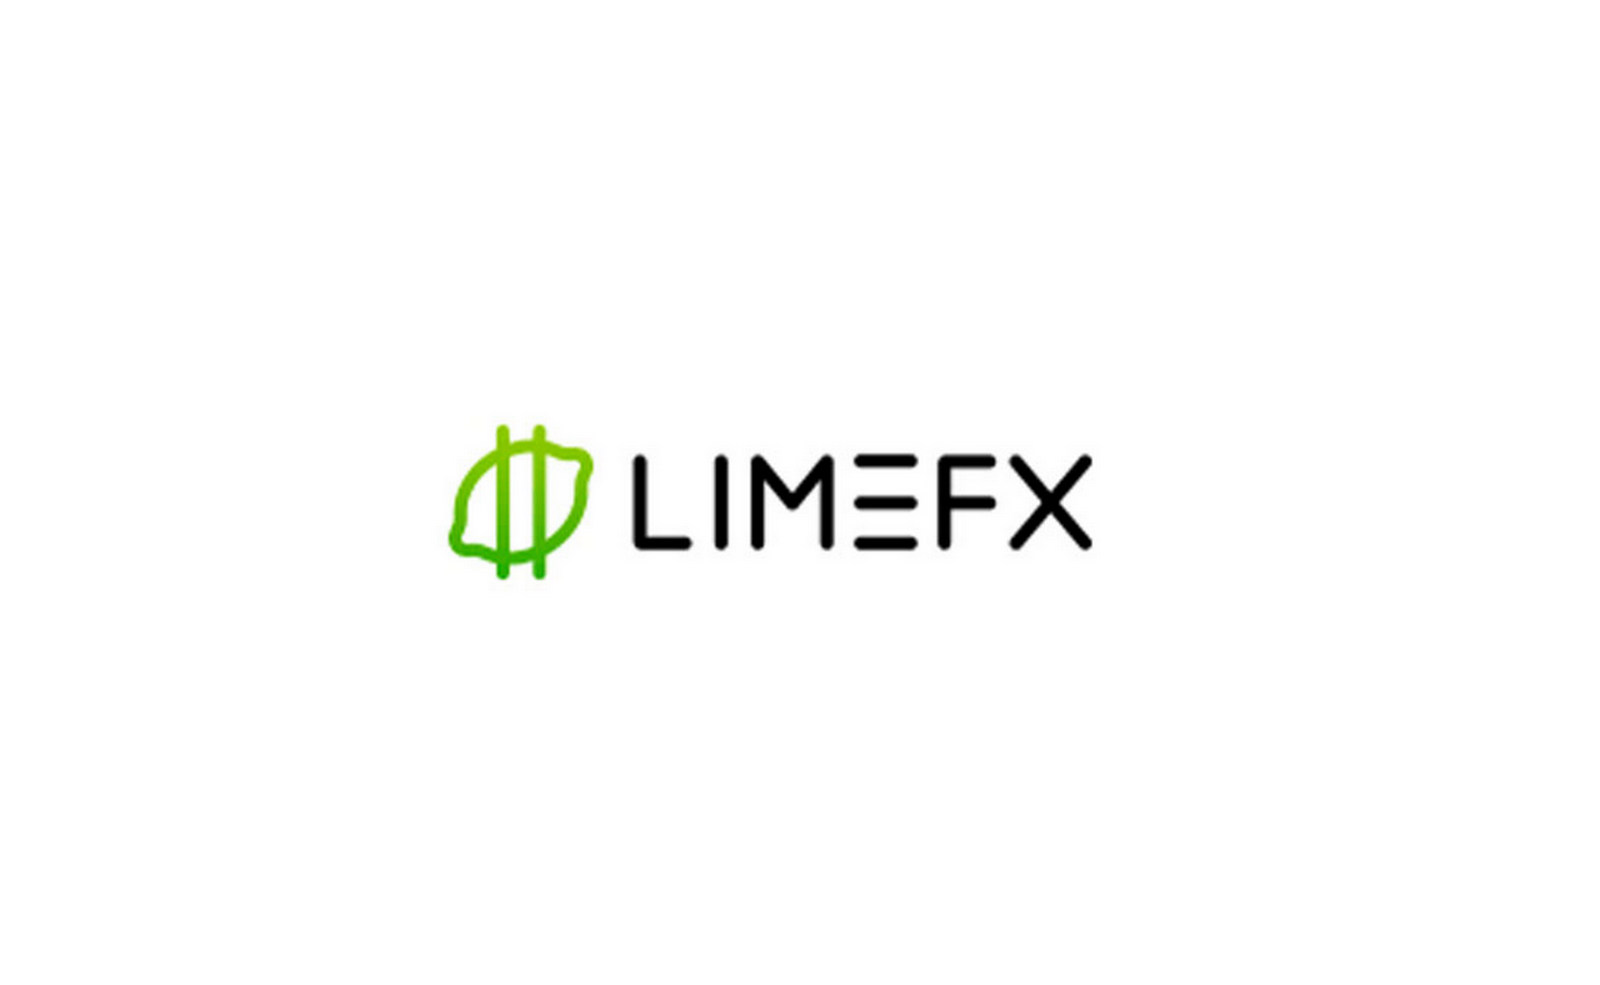 Is LimeFX a good forex broker